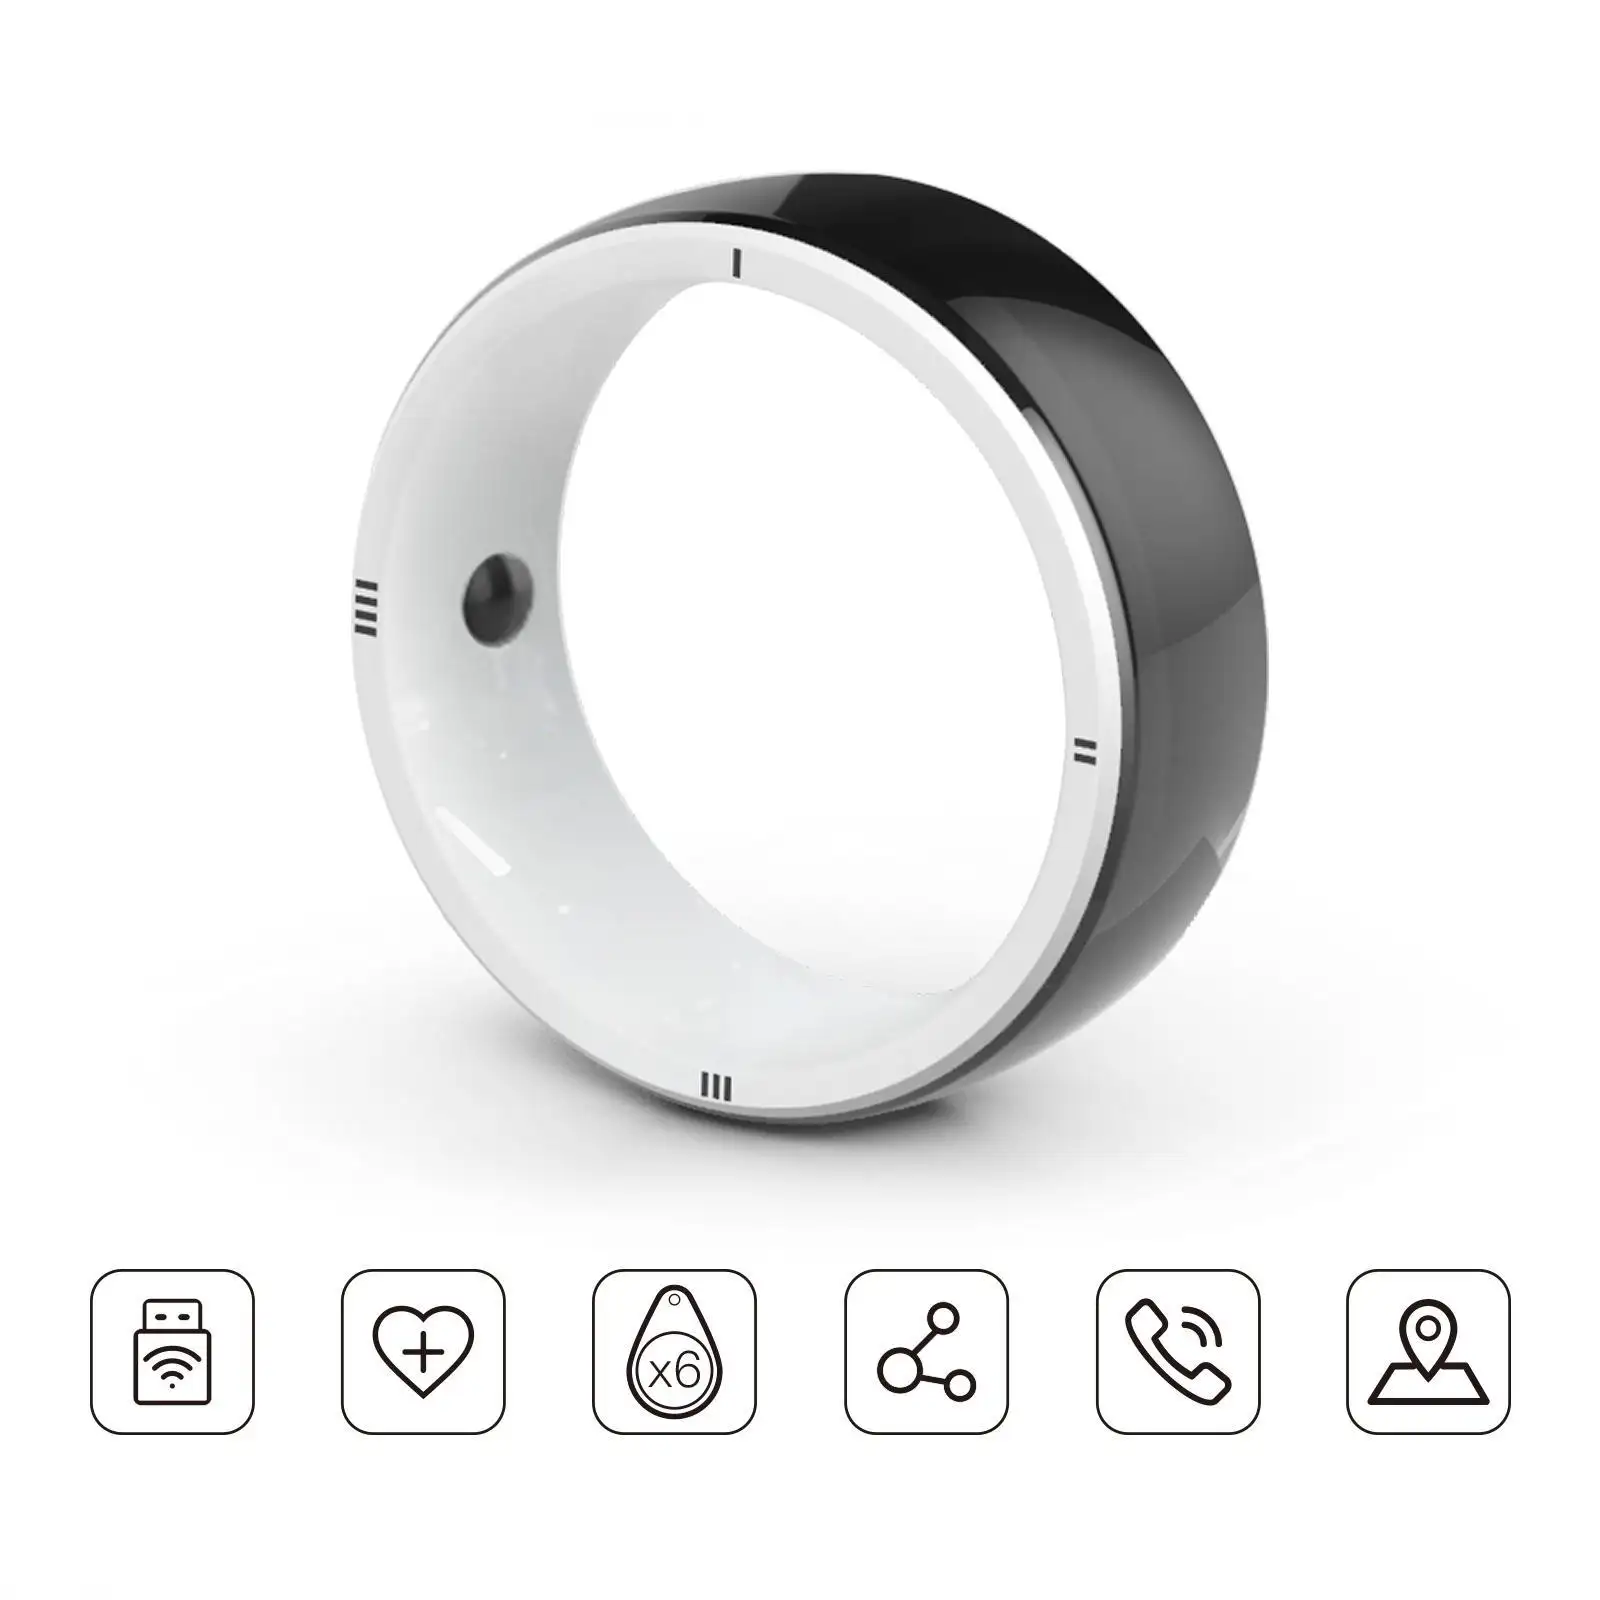 JAKCOM R5 cincin pintar baru cincin pintar lebih baik dari earphone Beli sekarang bayar nanti kubah ebook ereader 2560x1440 monitor soundbar bmcc